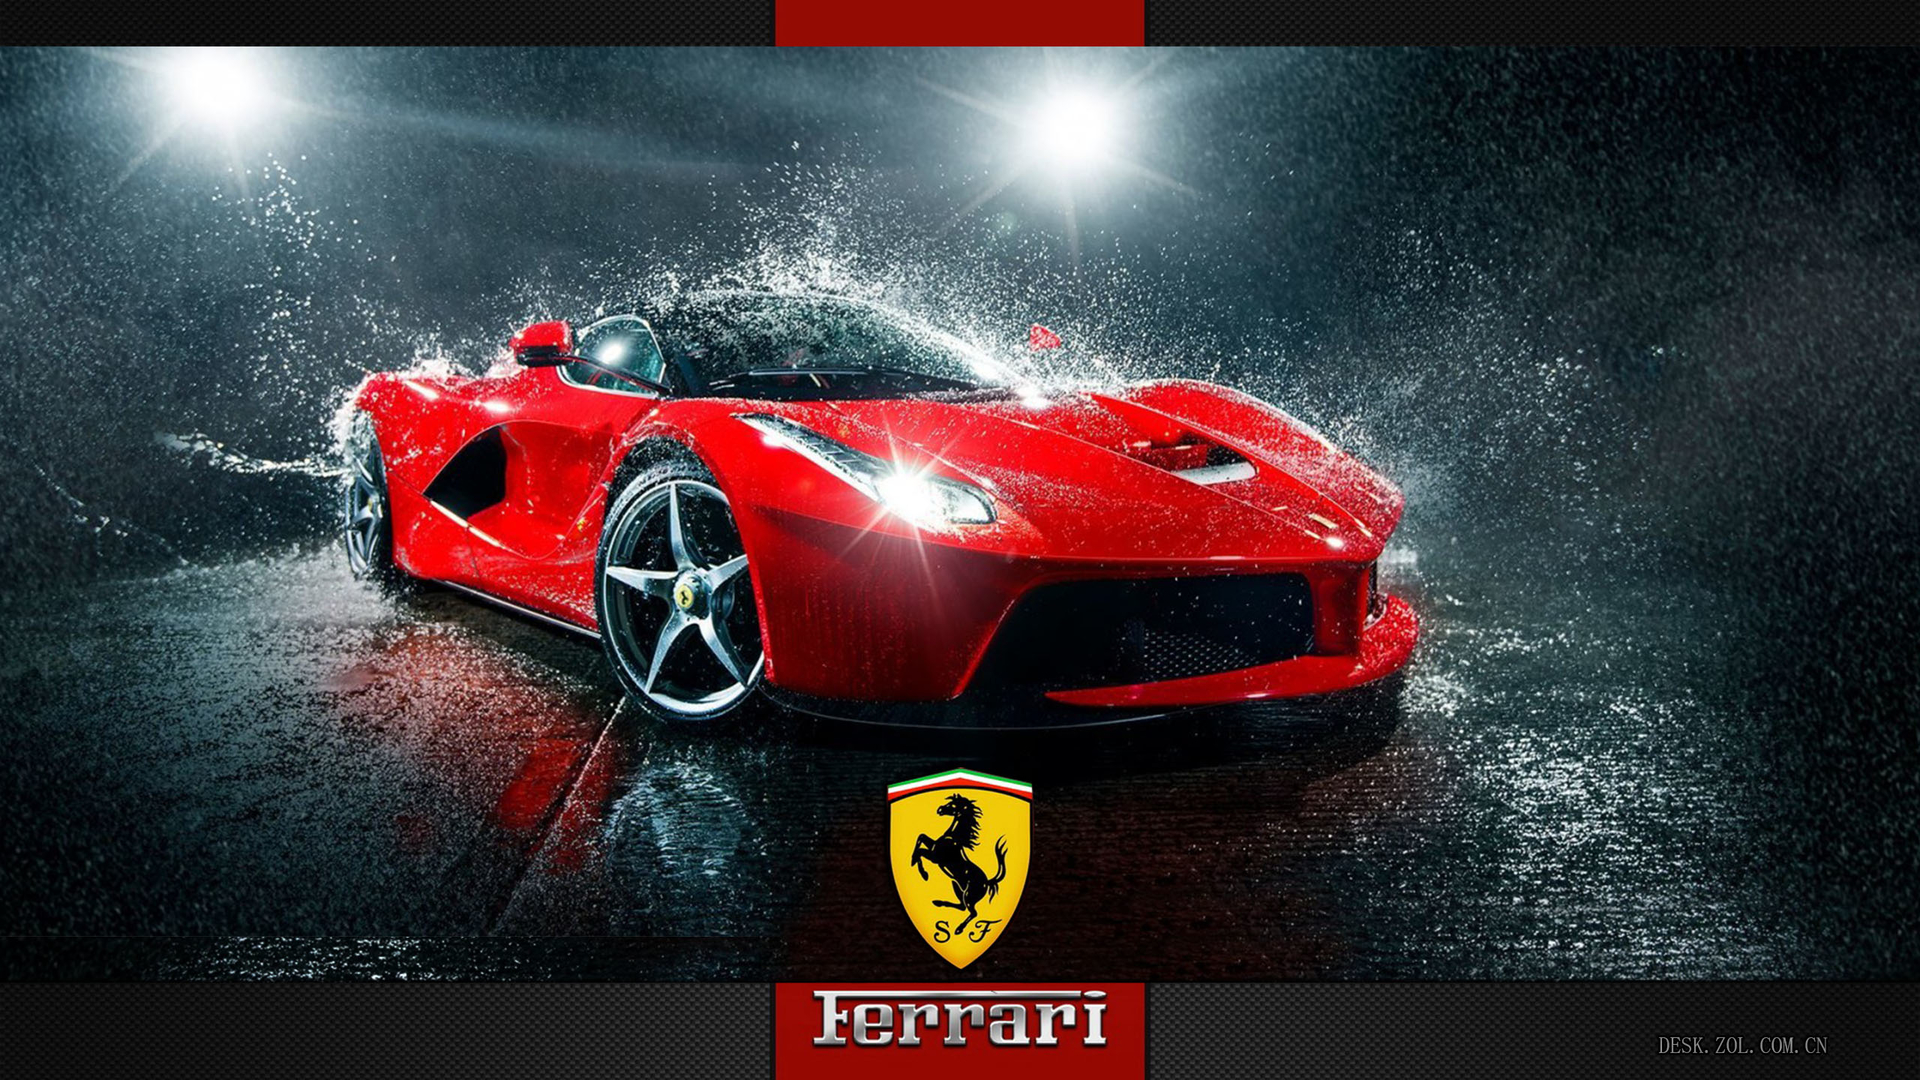 法拉利(Ferrari)高性能跑车酷炫电脑壁纸